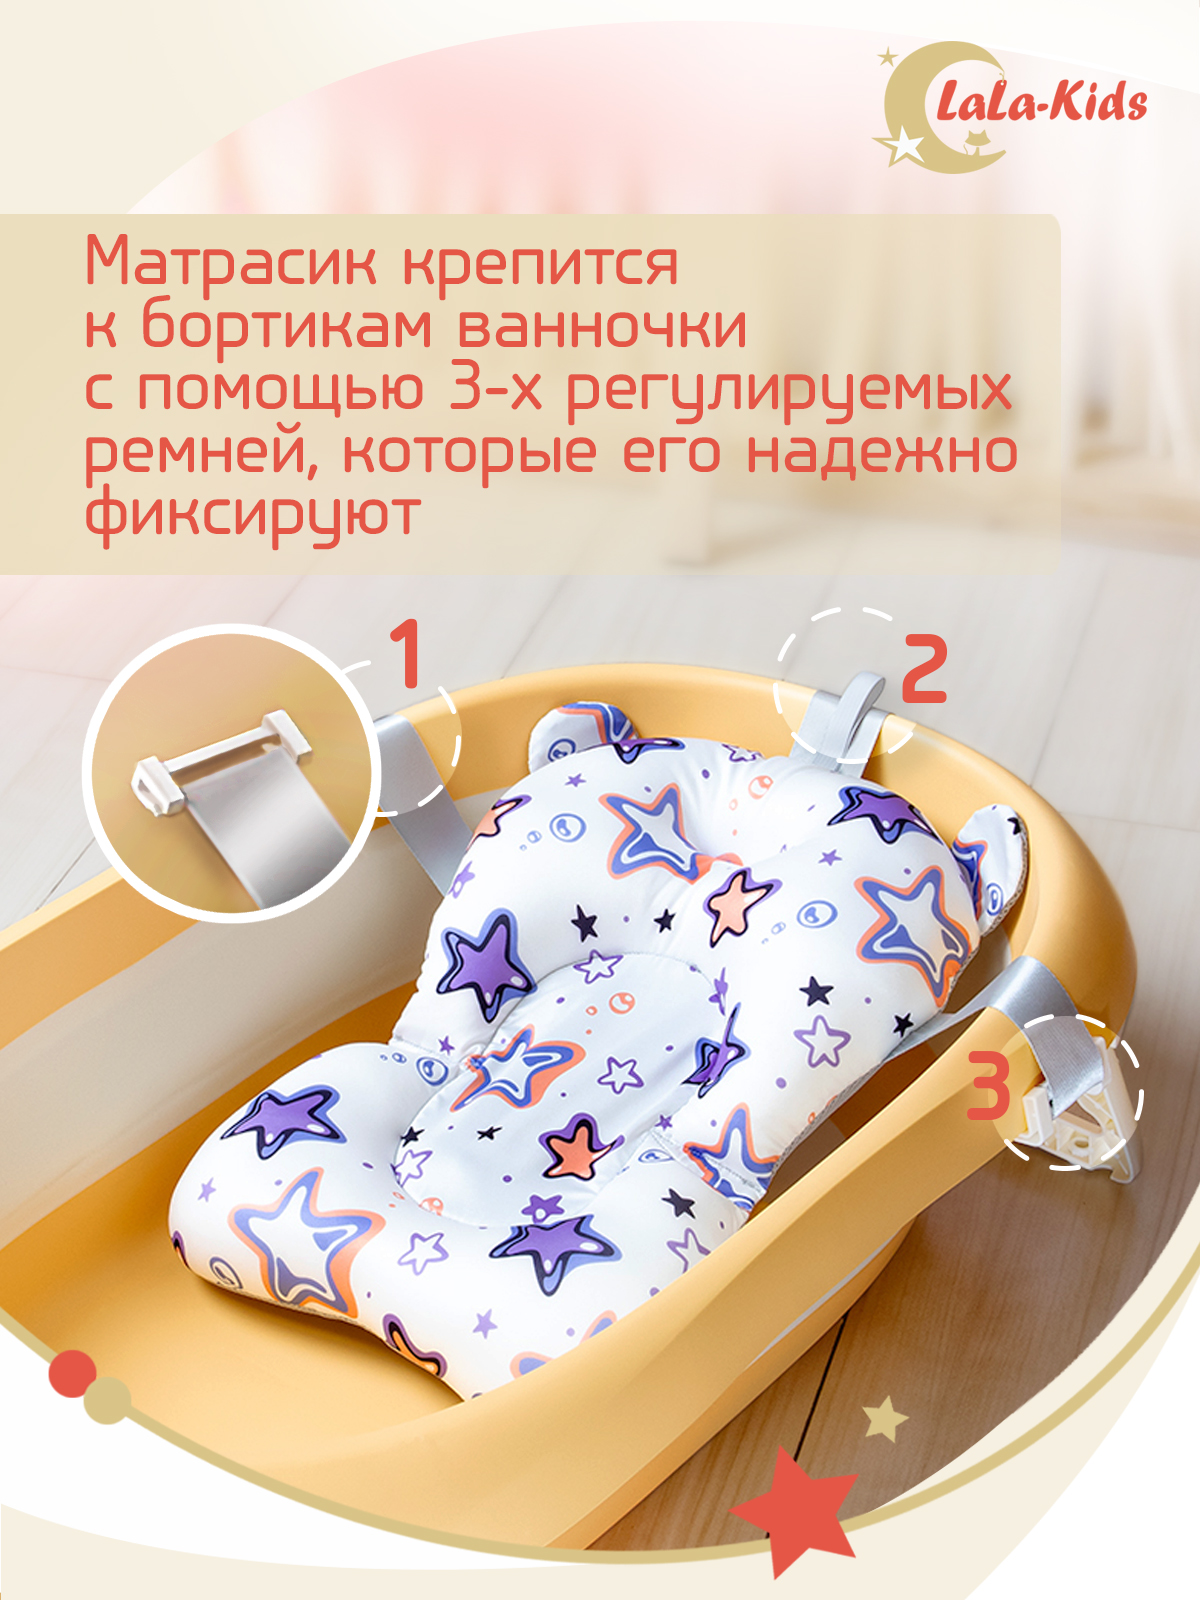 Детская ванночка LaLa-Kids складная с матрасиком для купания новорожденных - фото 16